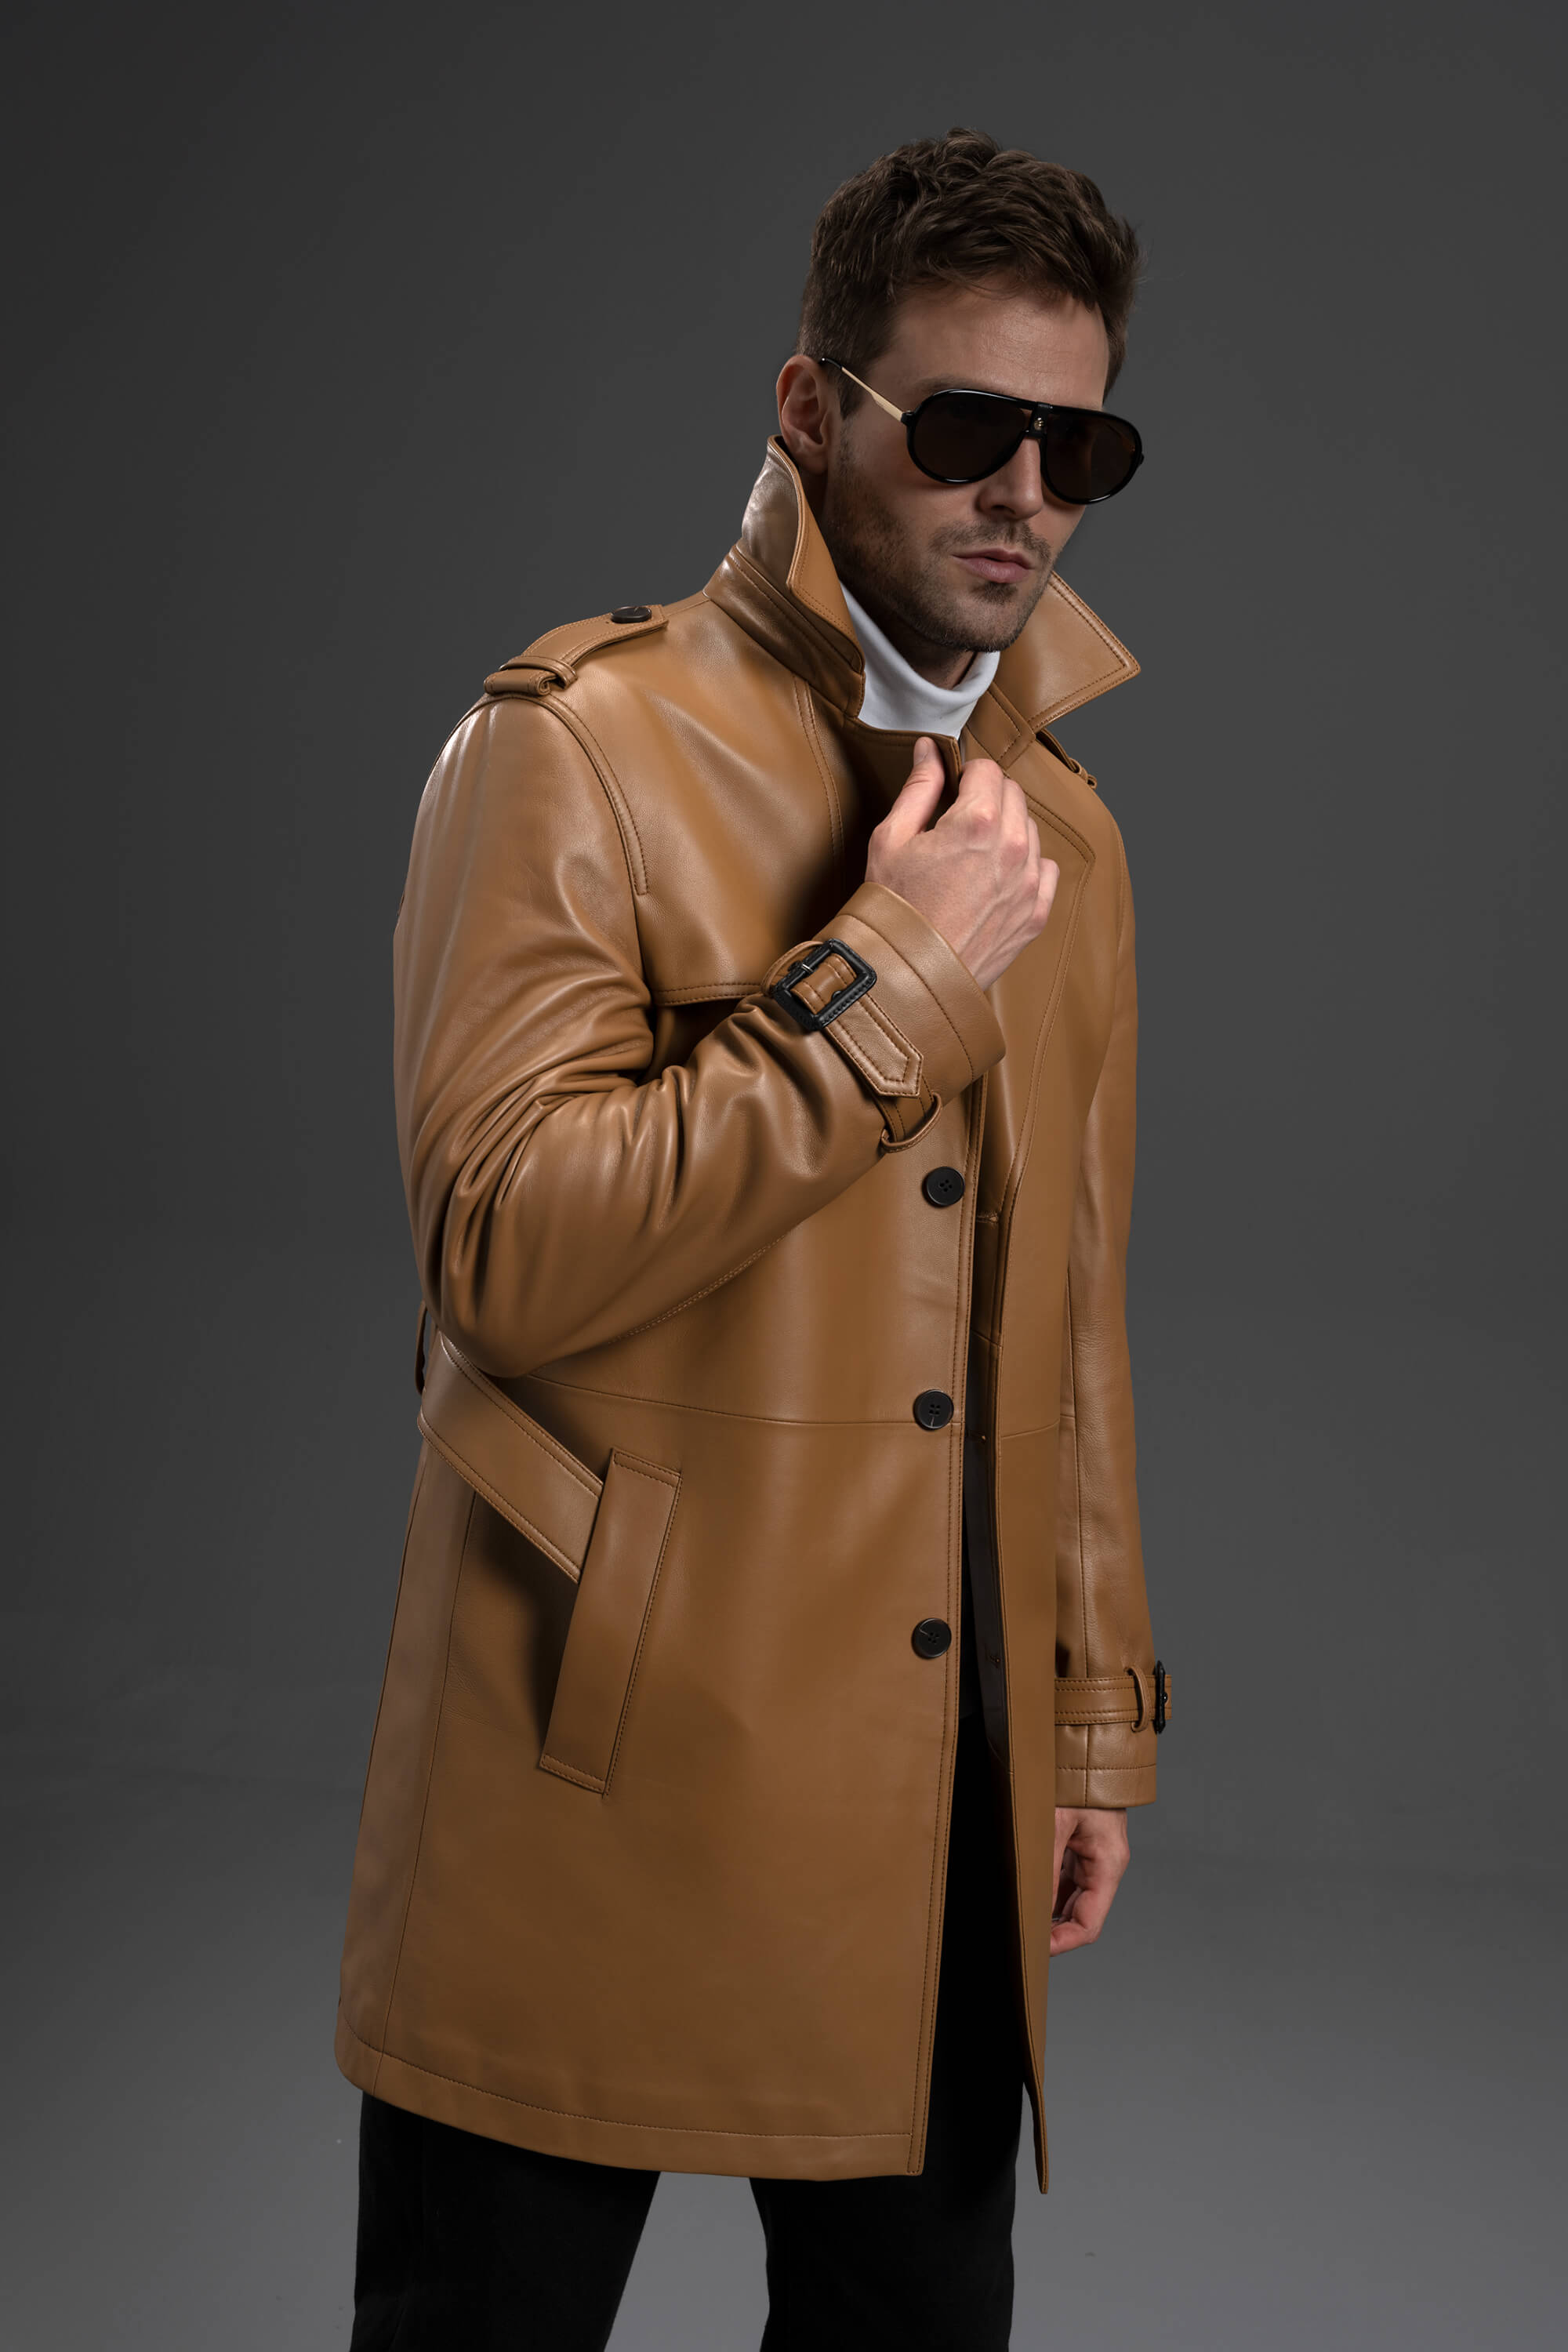 leather coat | Leather coat jacket, Long leather coat, Red leather coat